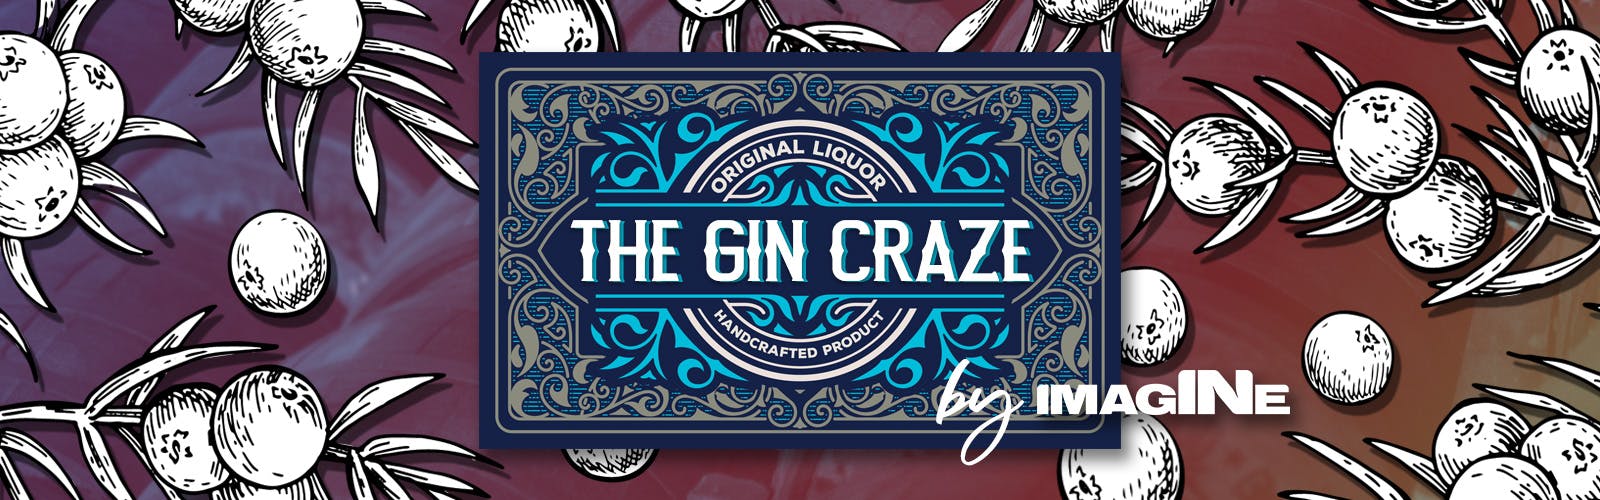 L'expérience Gin Craze à Londres avec Gin Palace et visite de la distillerie